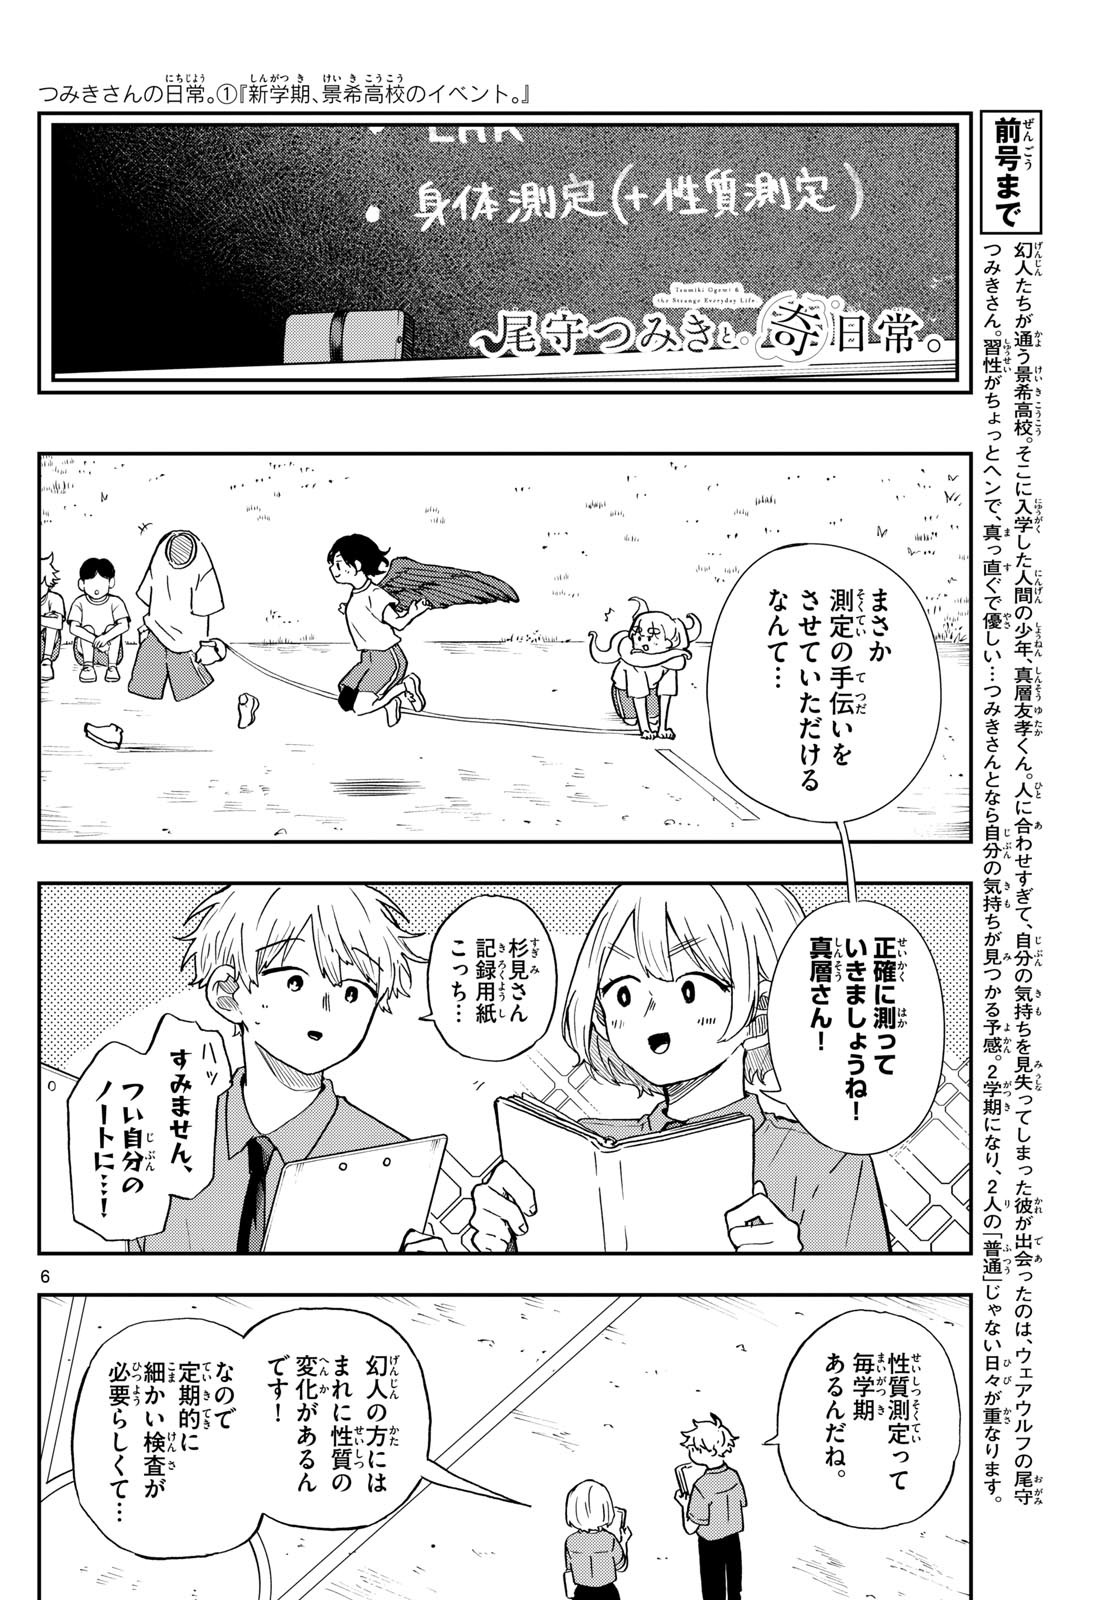 Omori Tsumiki to Kinichijou. - Chapter 26 - Page 6